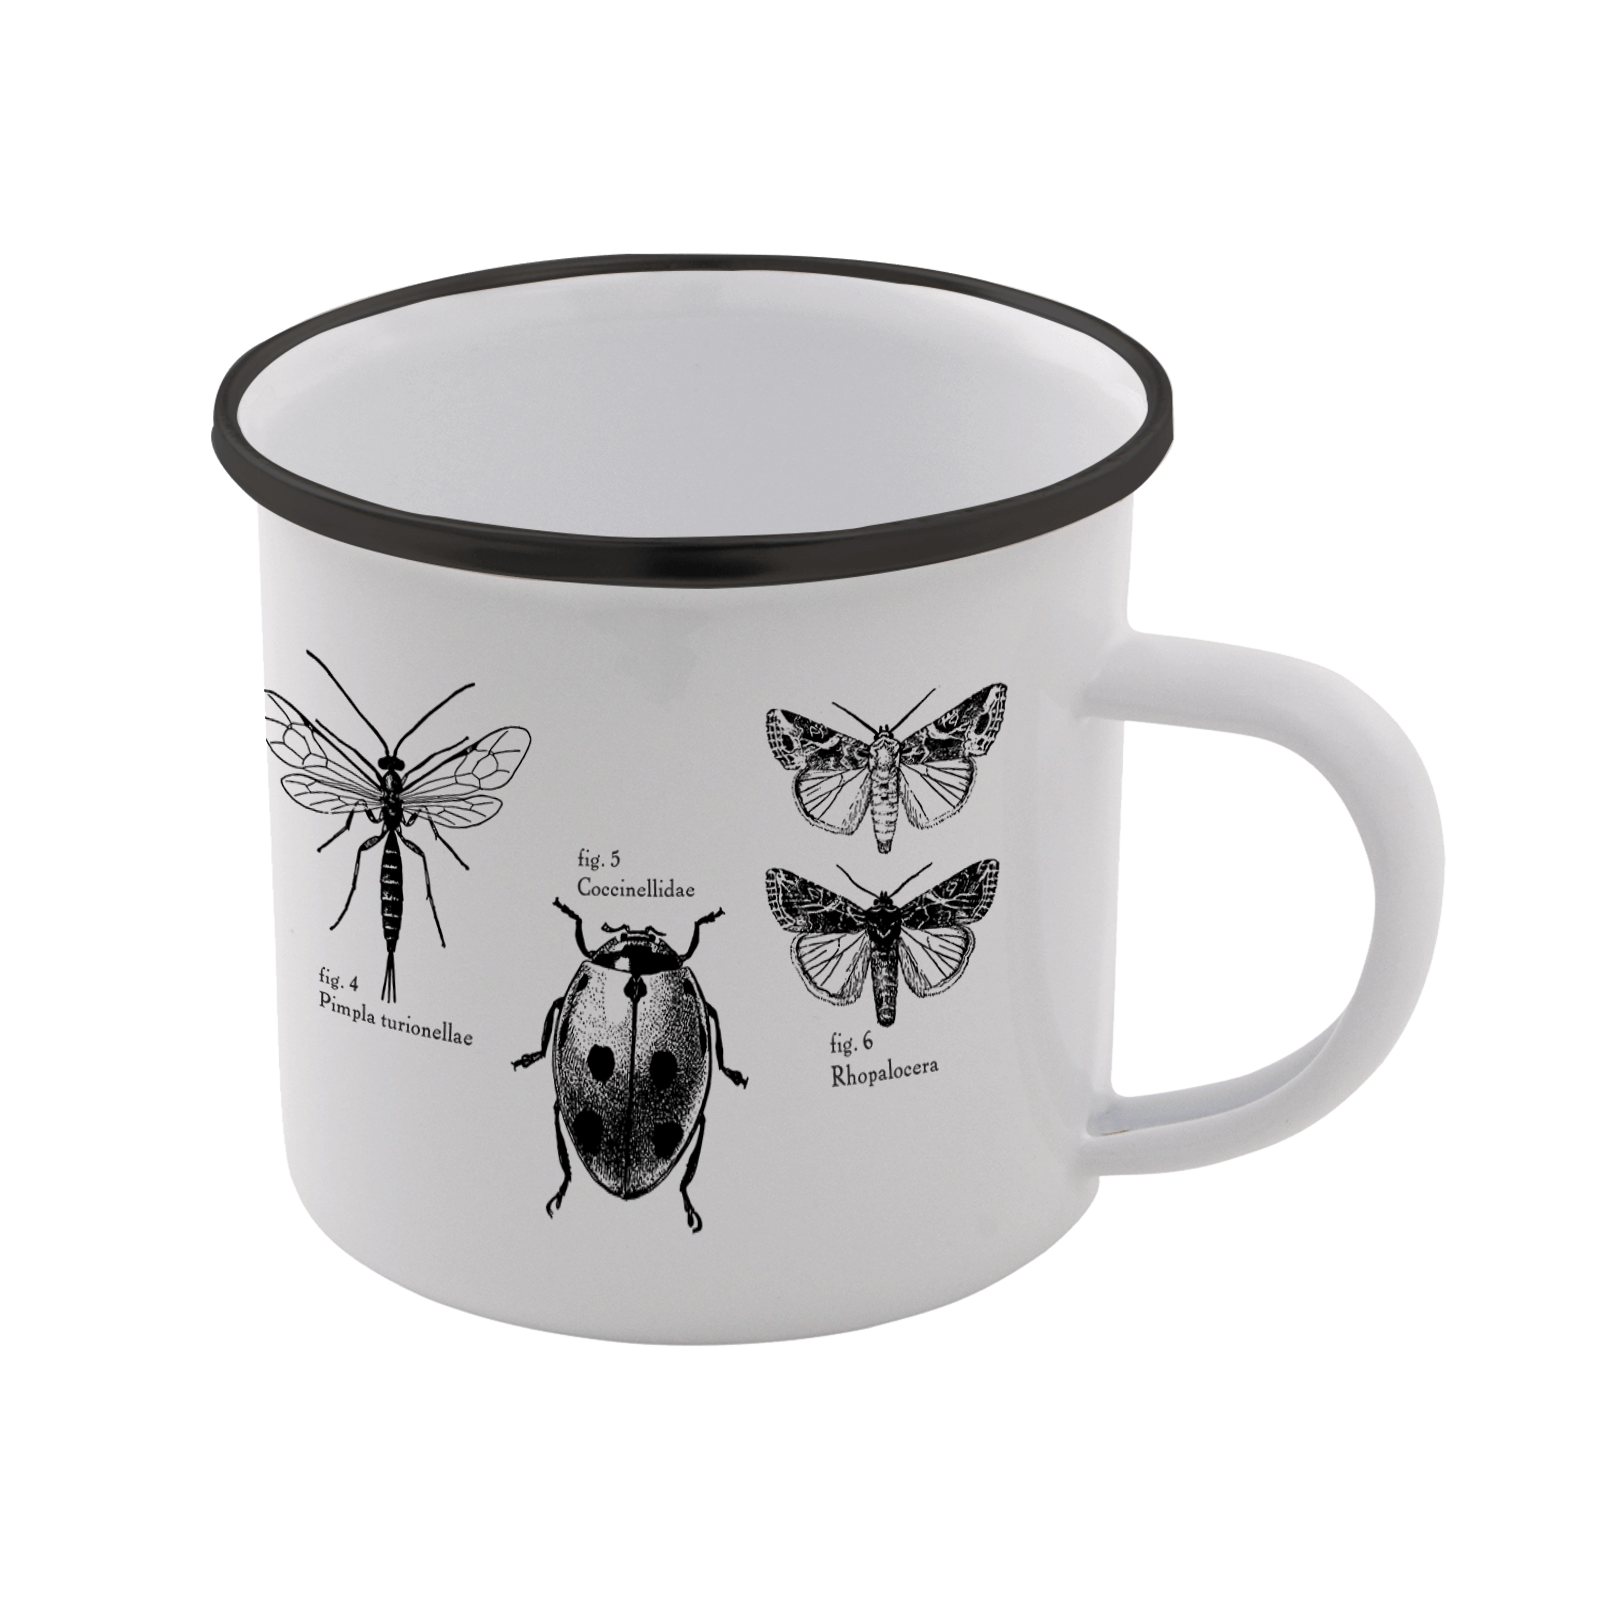 Insects Enamel Mug - White